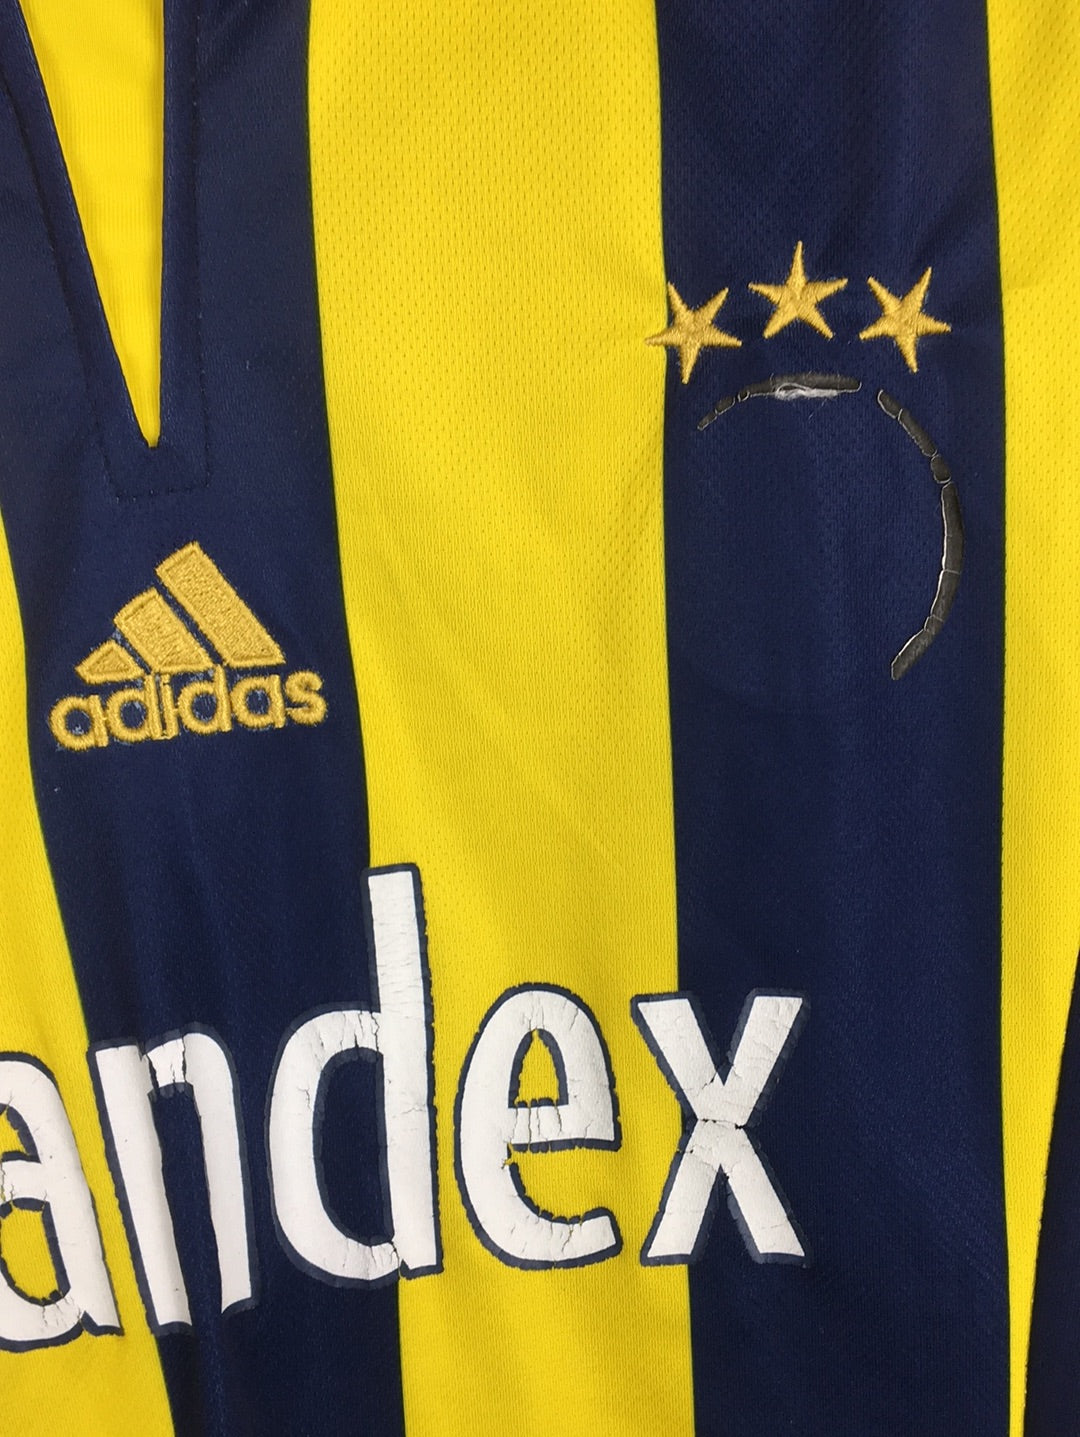 Adidas Fenerbaçe jersey (S)